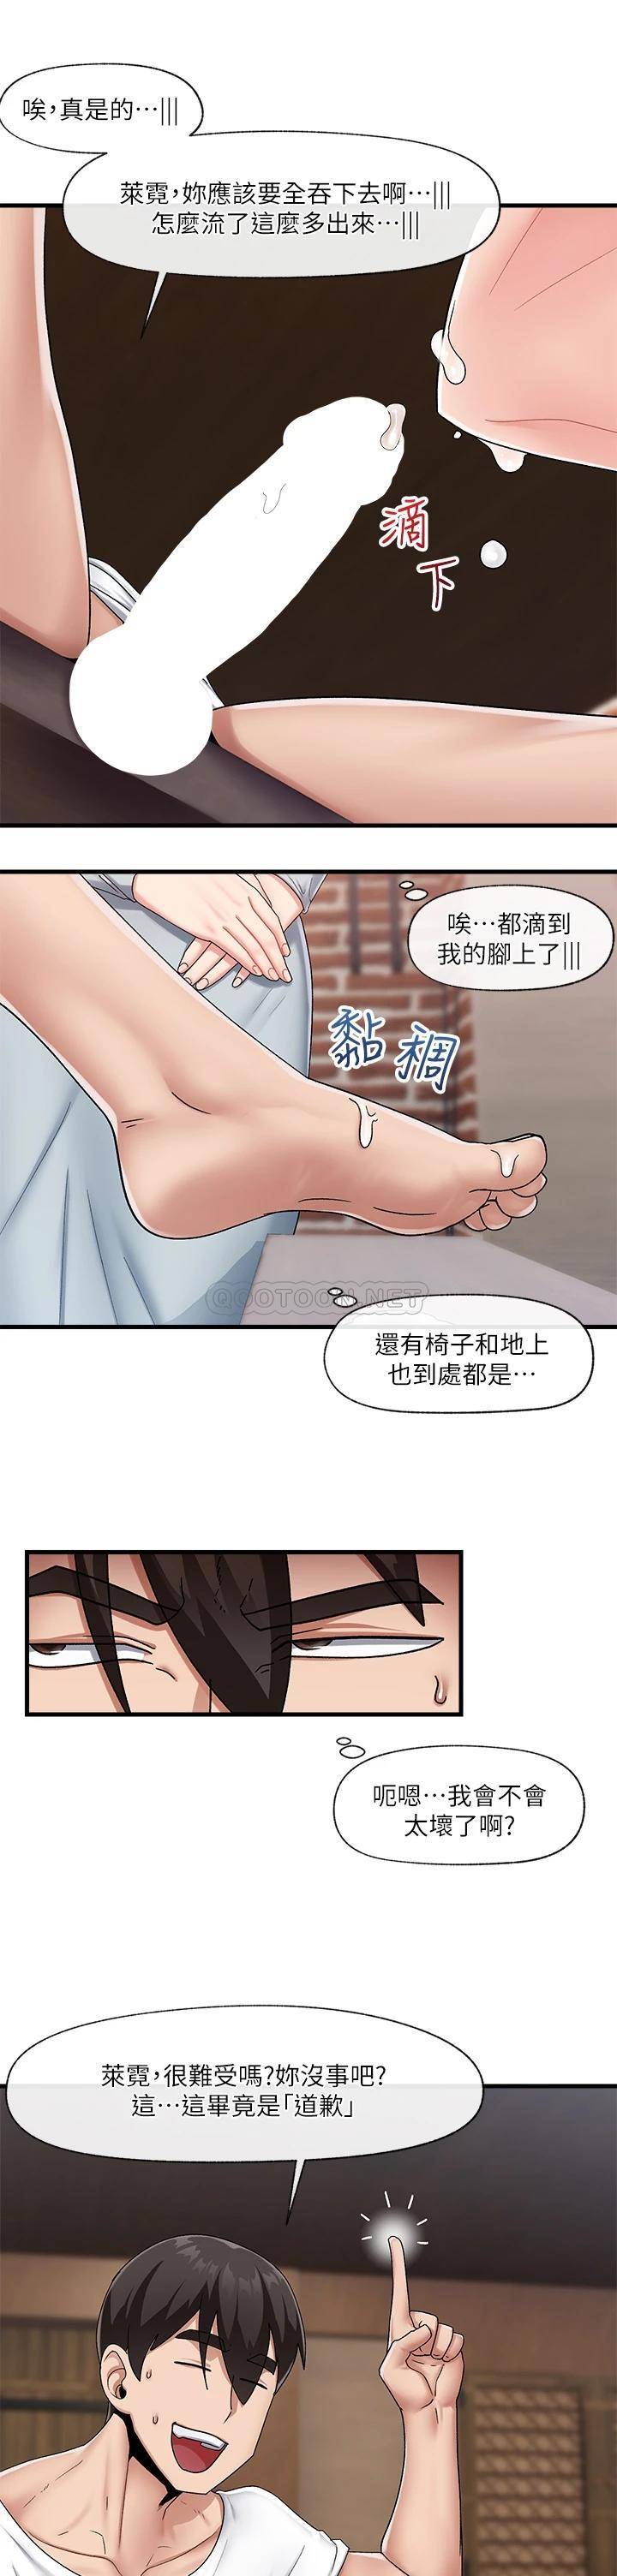 韩国污漫画 異世界催眠王 第22话 裸体土下座才有诚意 20